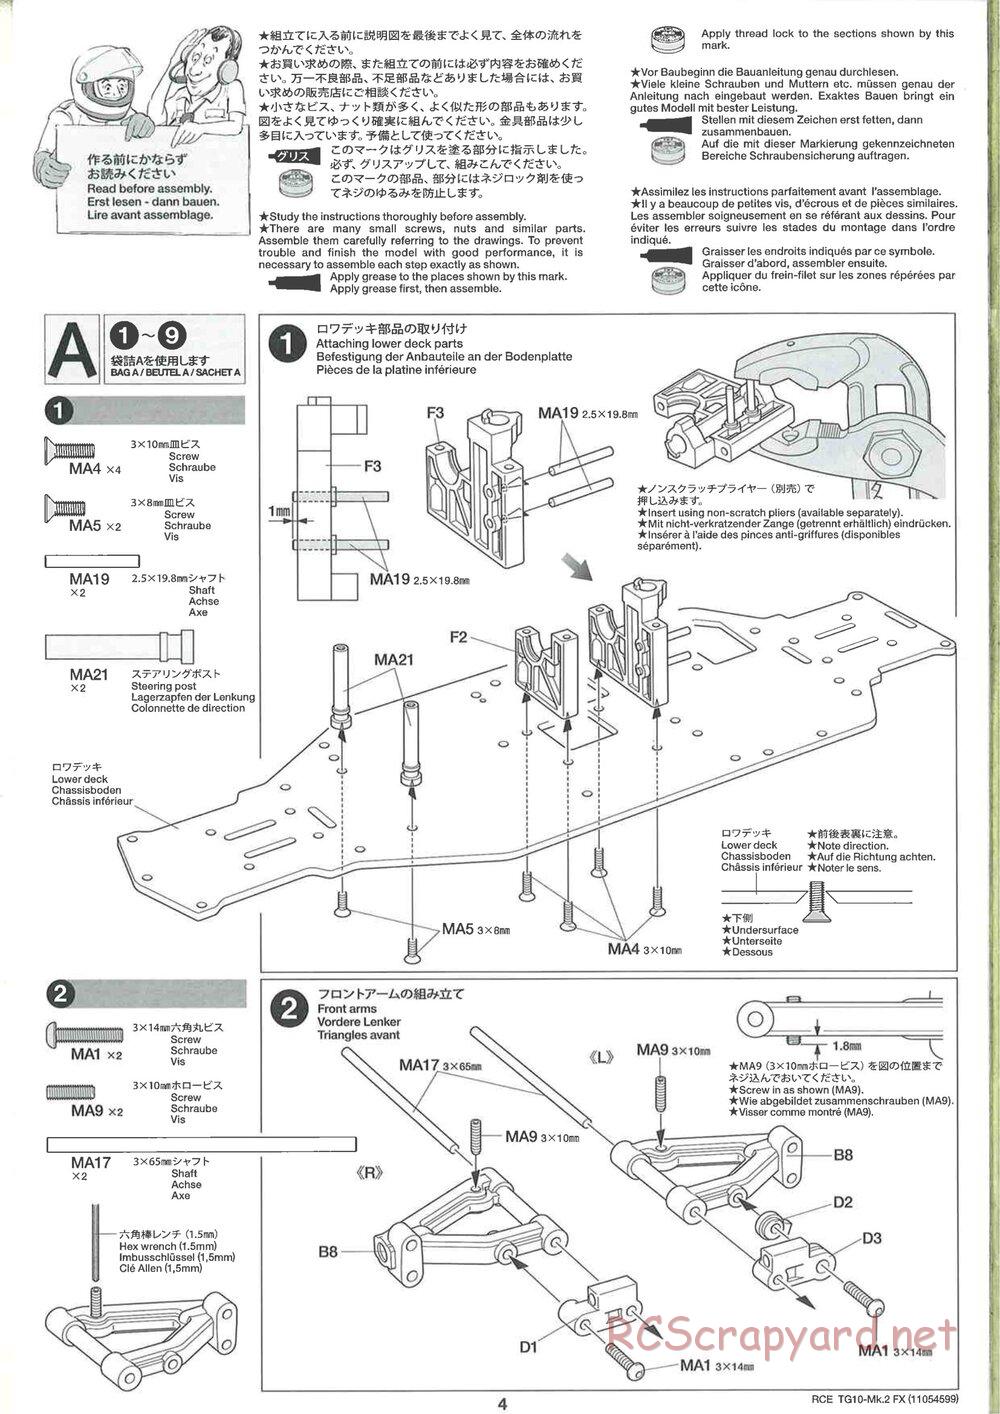 Tamiya - TG10 Mk.2 FX Chassis - Manual - Page 4